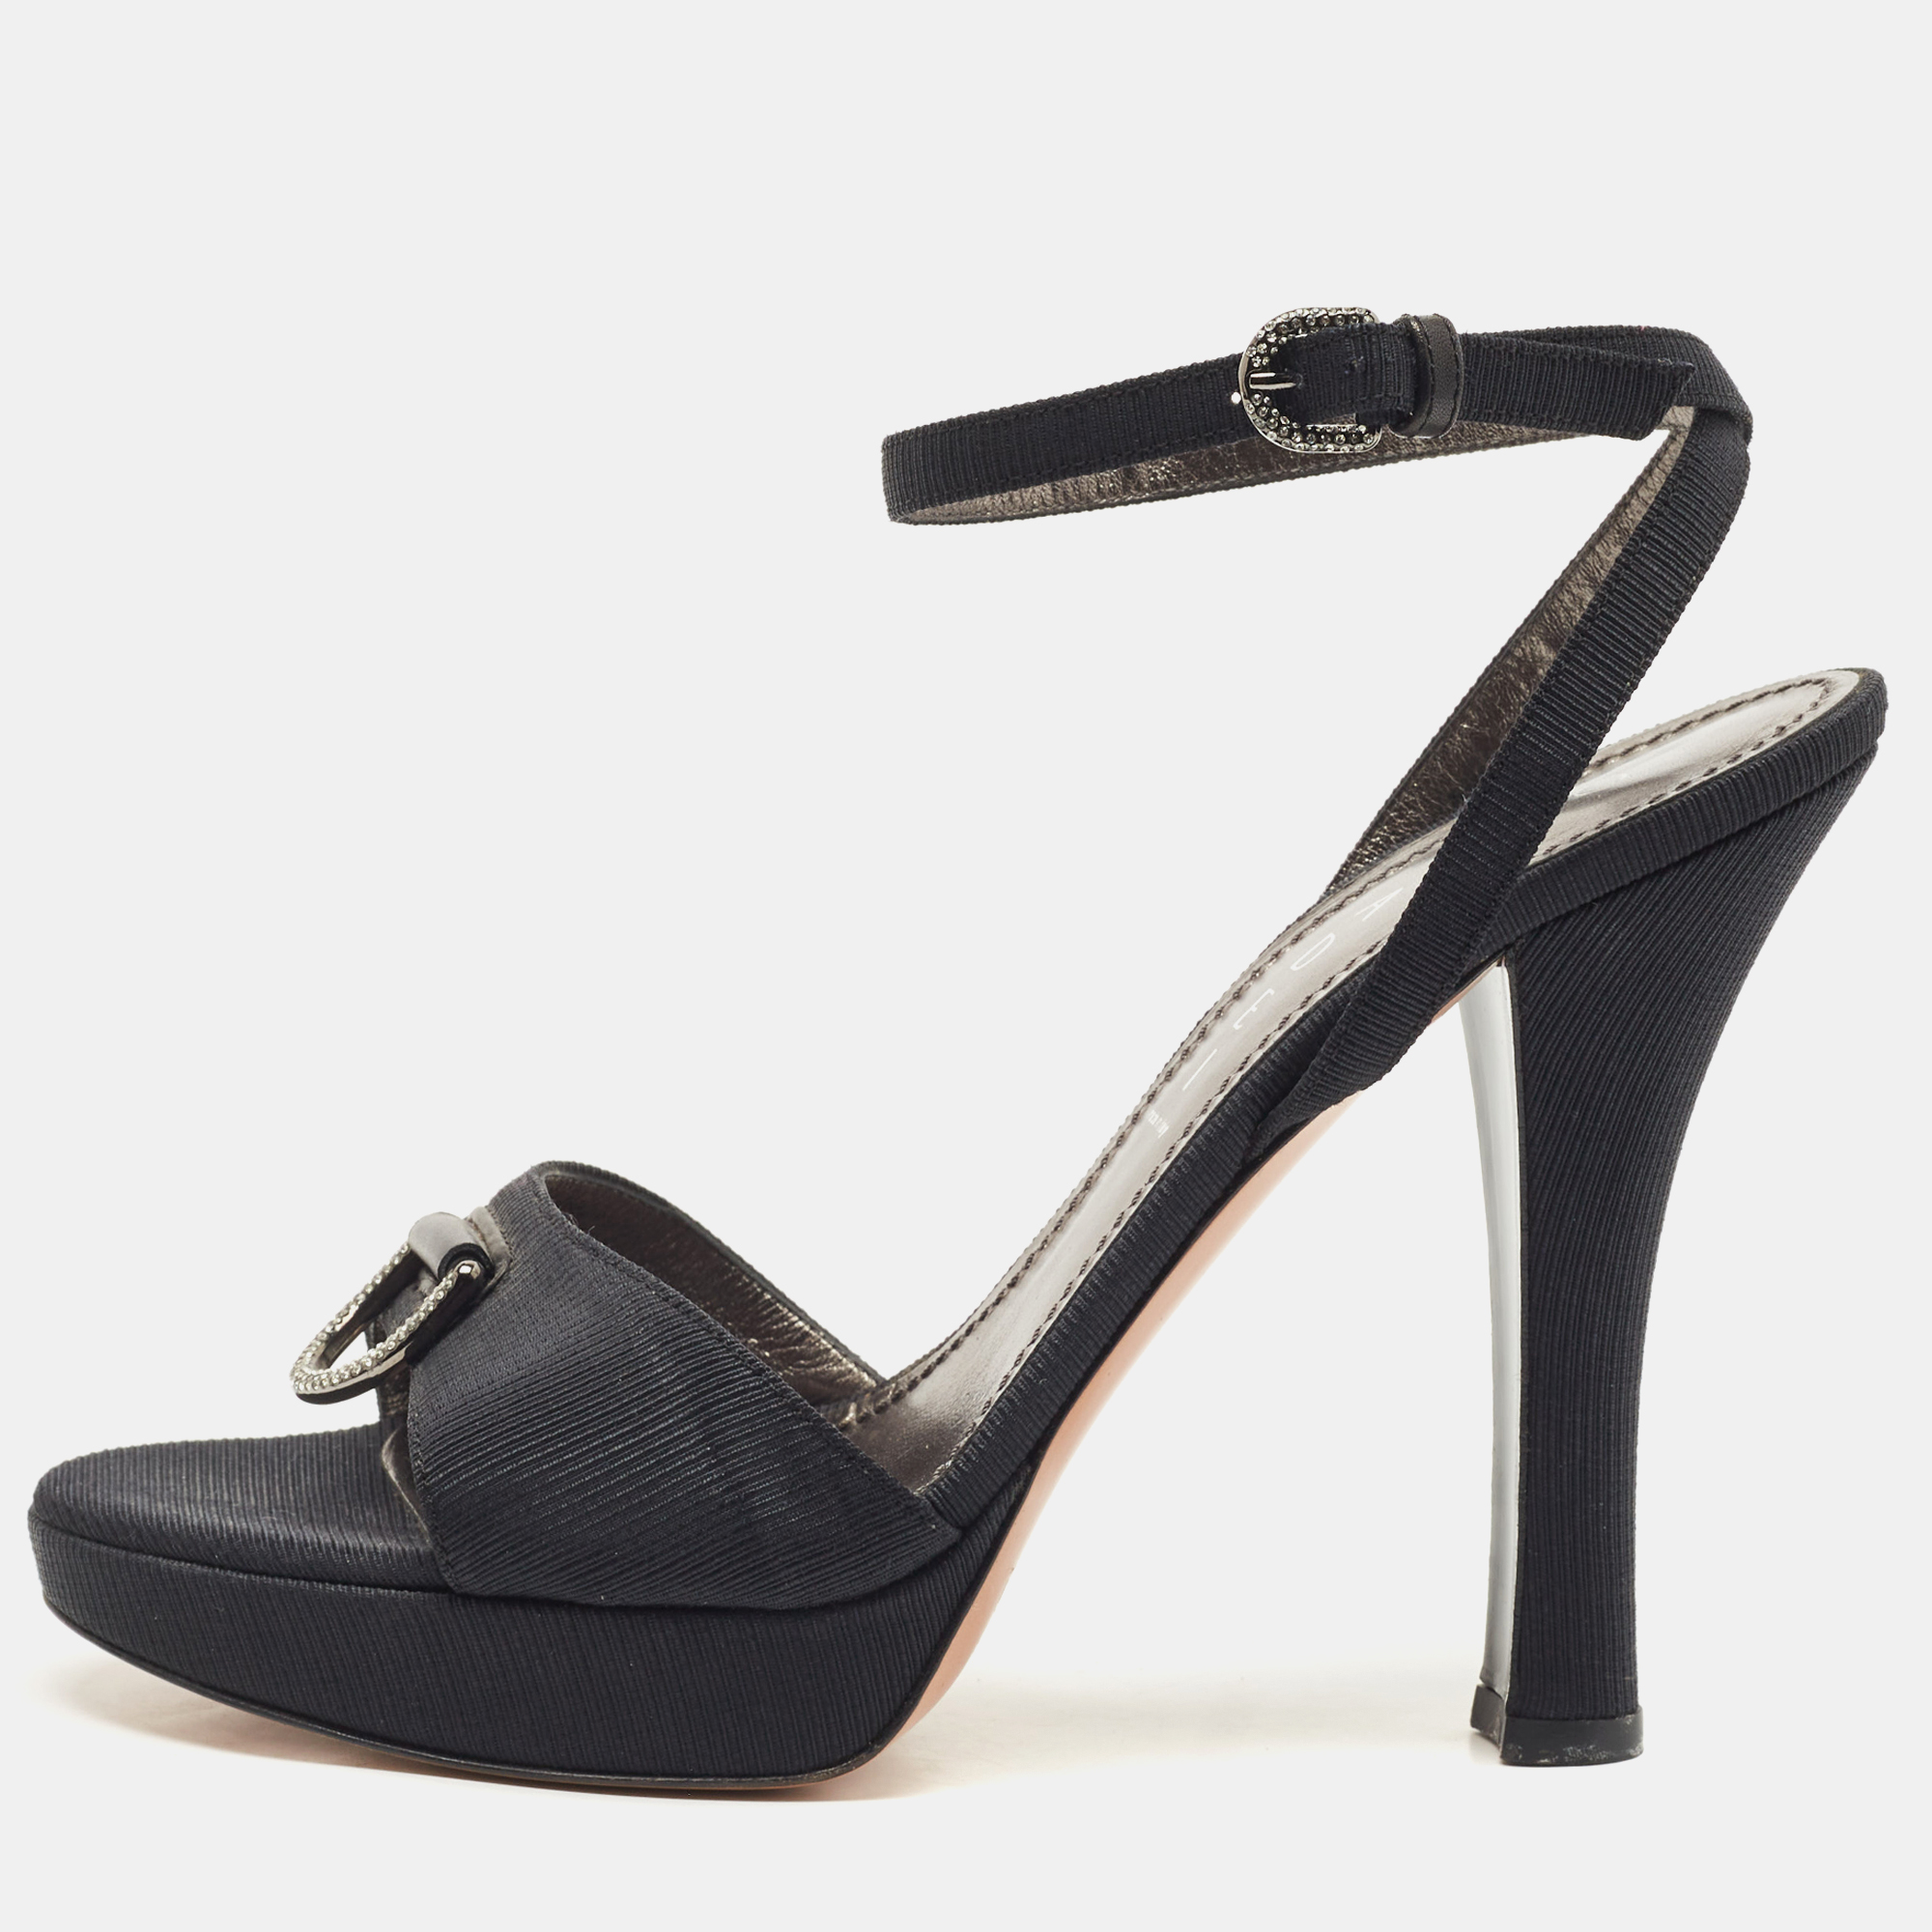 Pre-owned Casadei Black Grosgrain Fabric Crystal Embellished Platform Ankle Strap Sandals Size 36